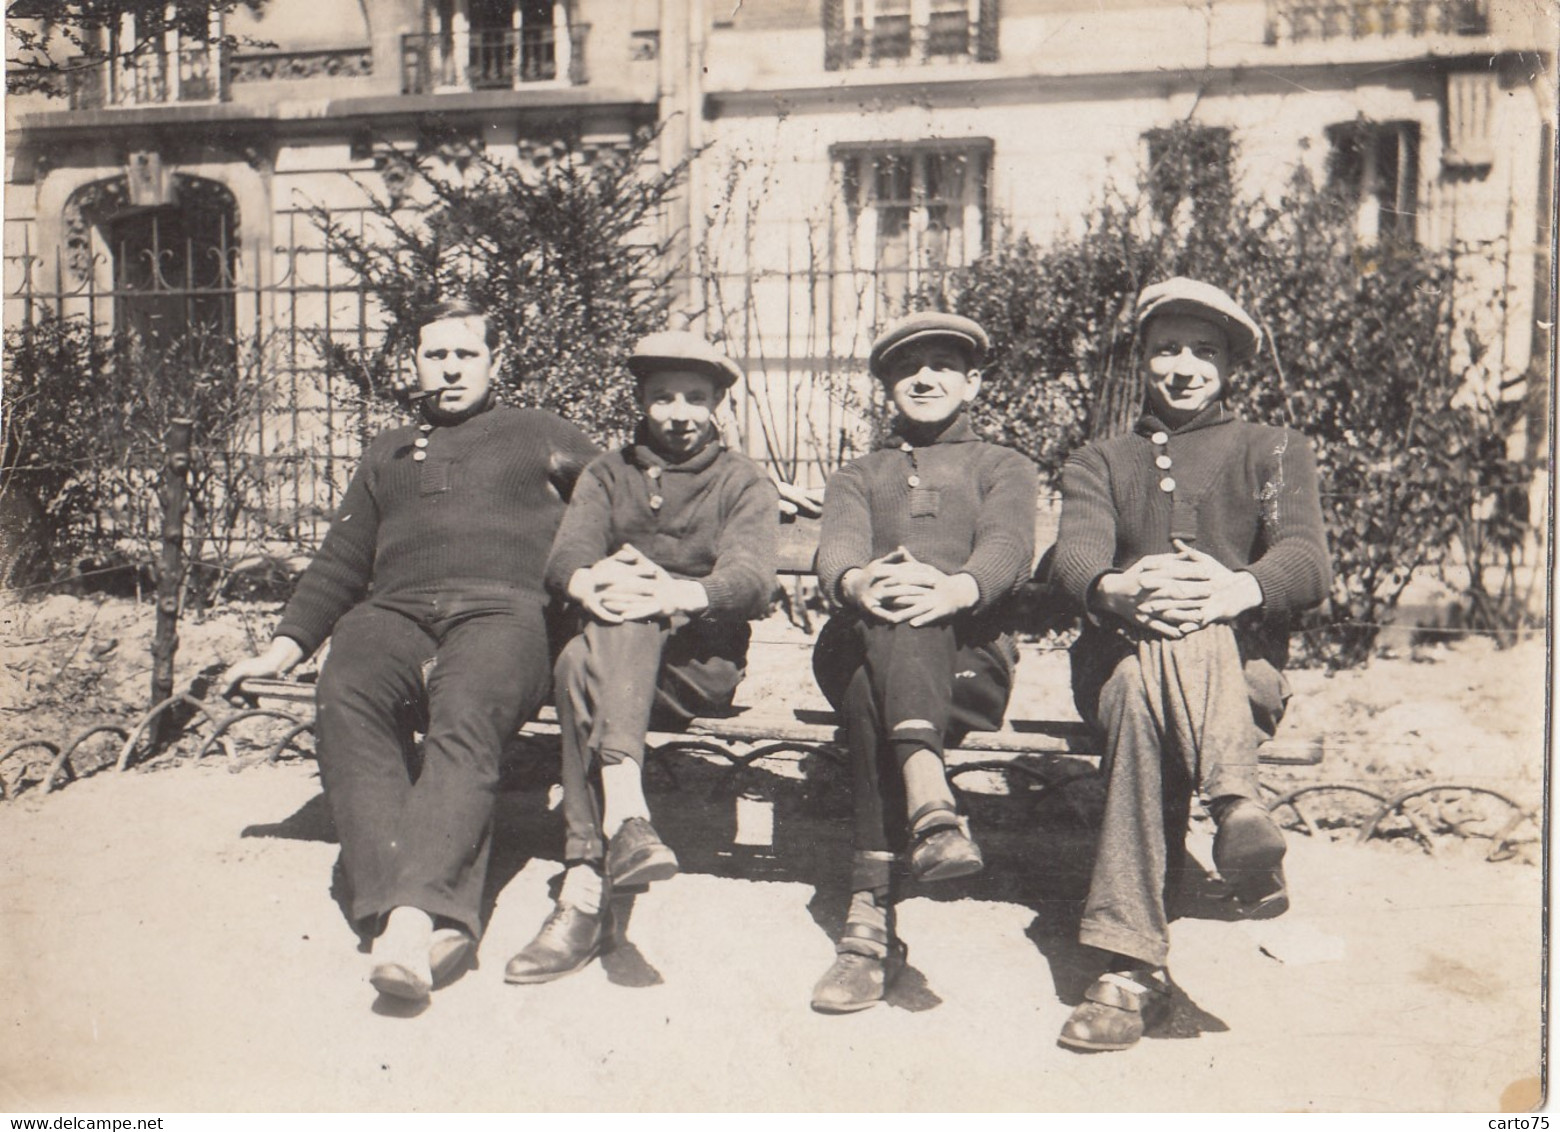 Photographie - 4 Hommes Assis Sur Un Banc - Parc Paris ? - Mode - Années 1930 - Fotografie